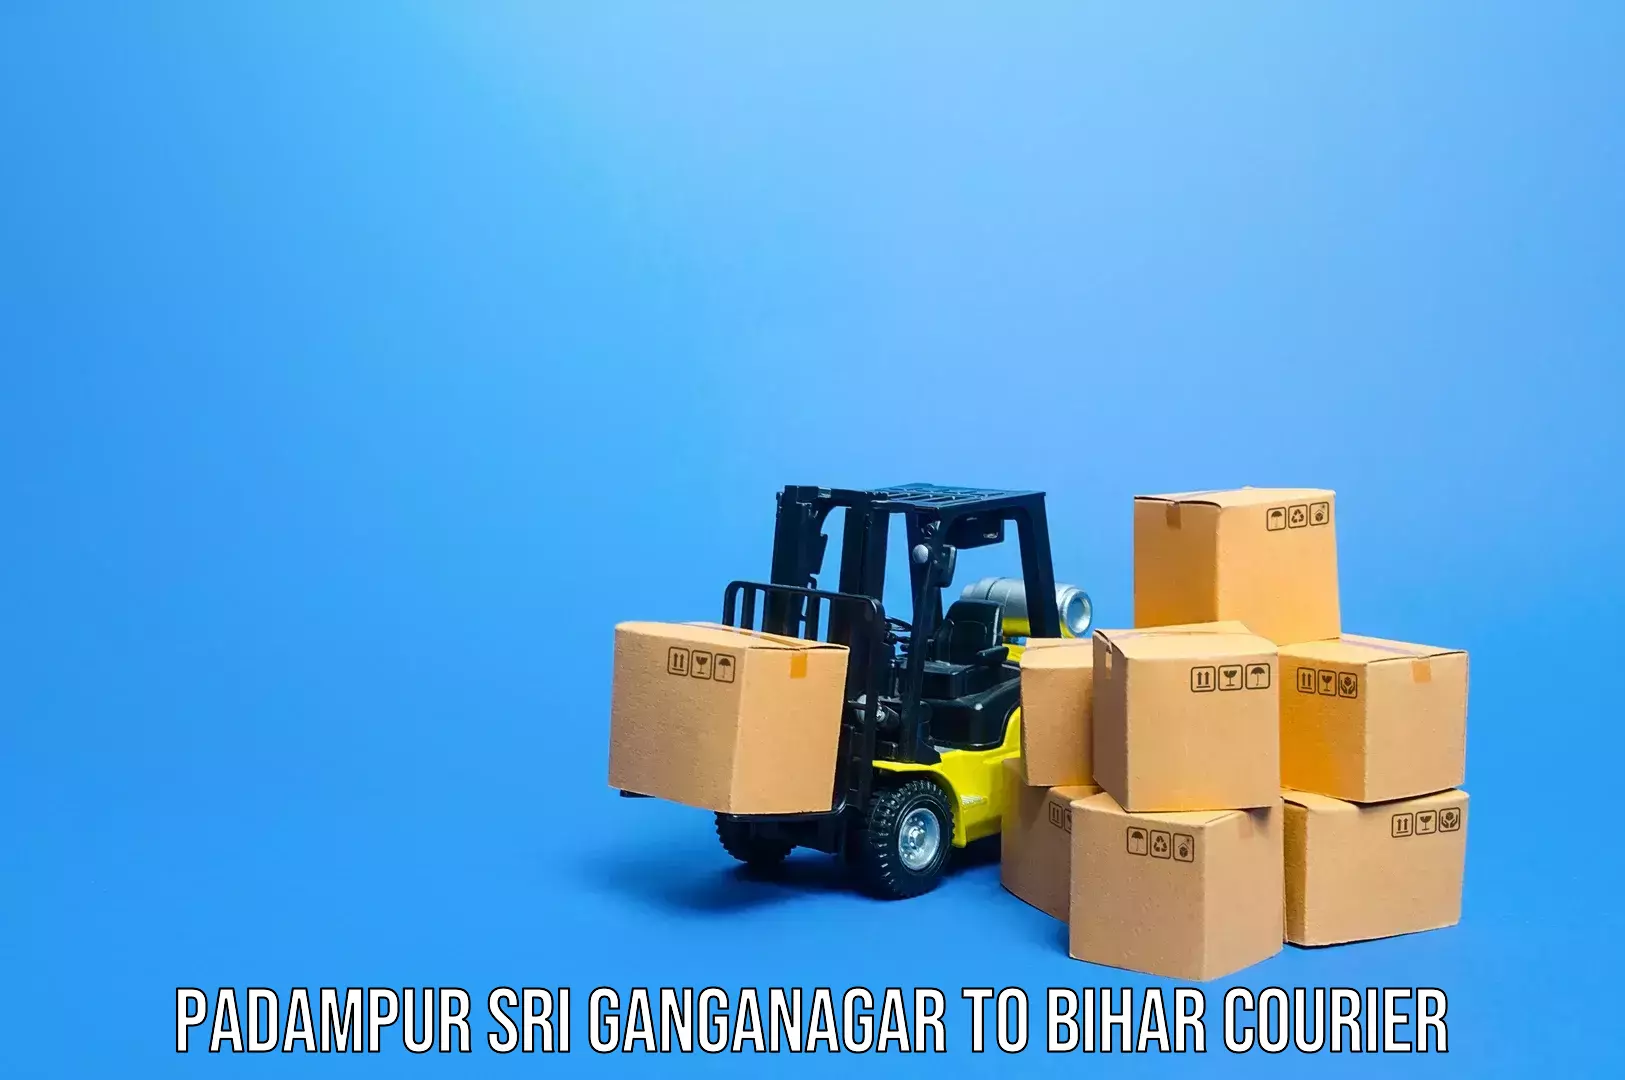 Luggage shipment specialists Padampur Sri Ganganagar to Mahnar Bazar